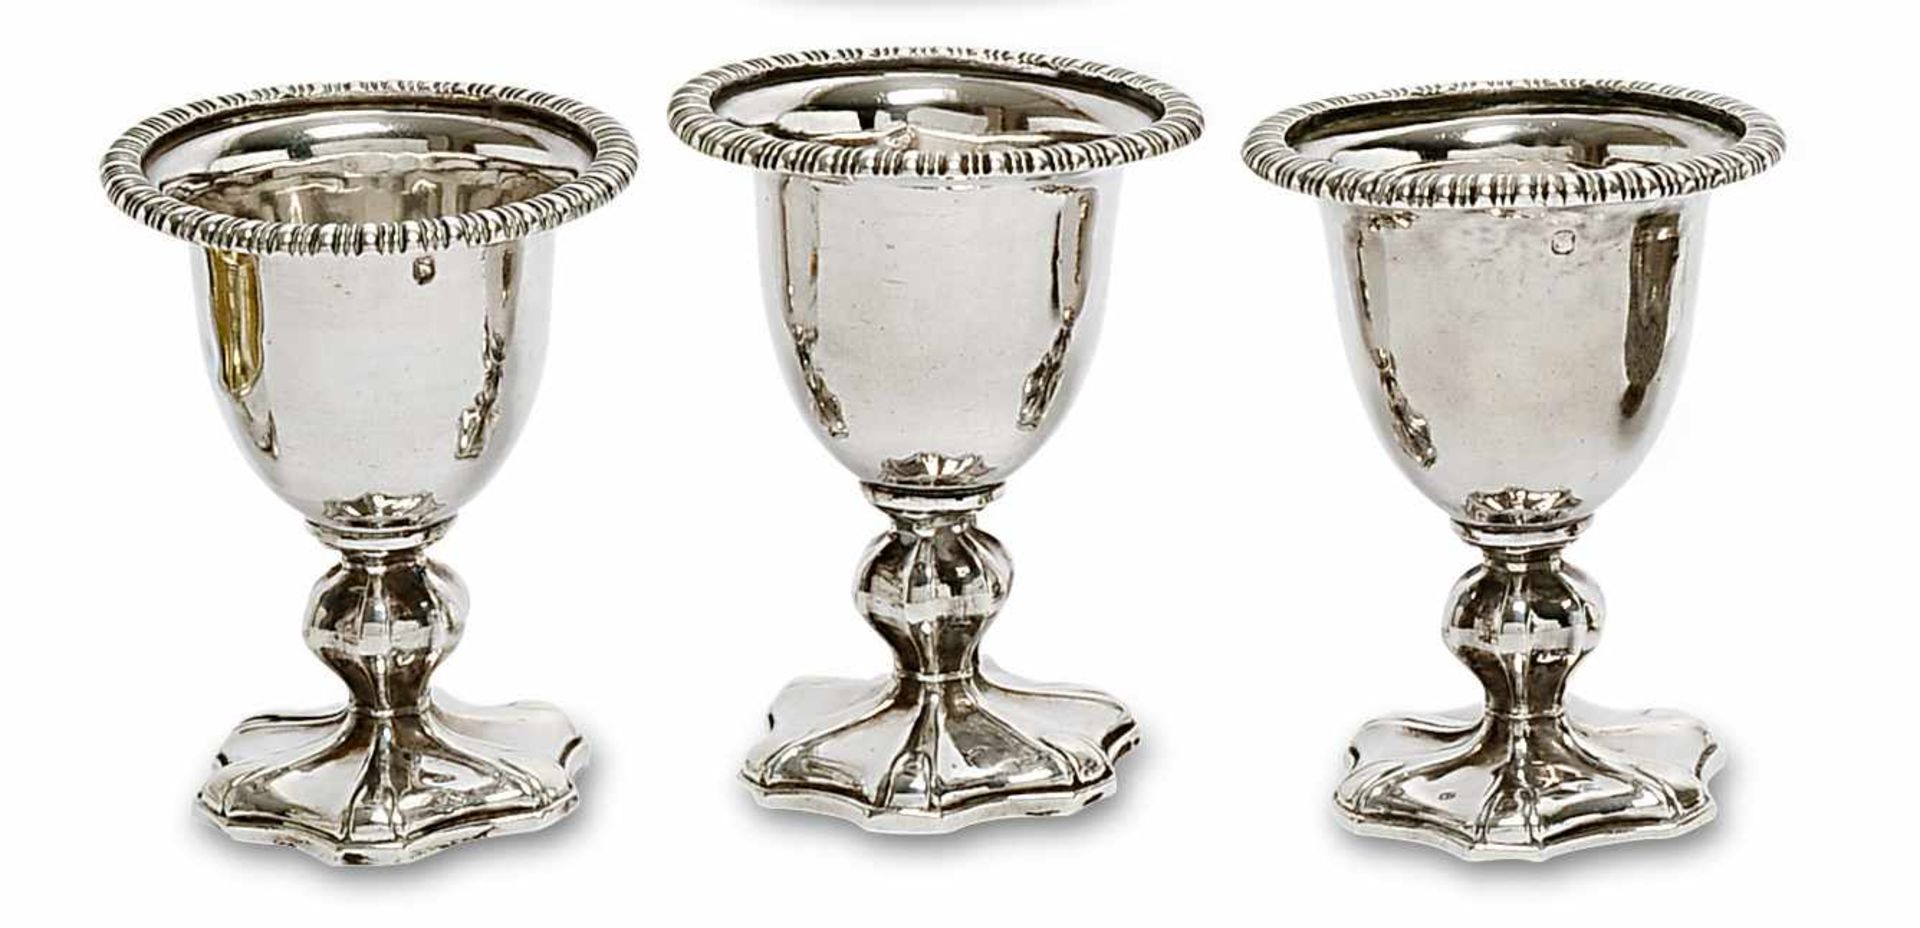 Drei Eierbecher Paris, um 1840, Louis-Isidore Angée Silber. Glockenförmige Kuppa mit godroniertem